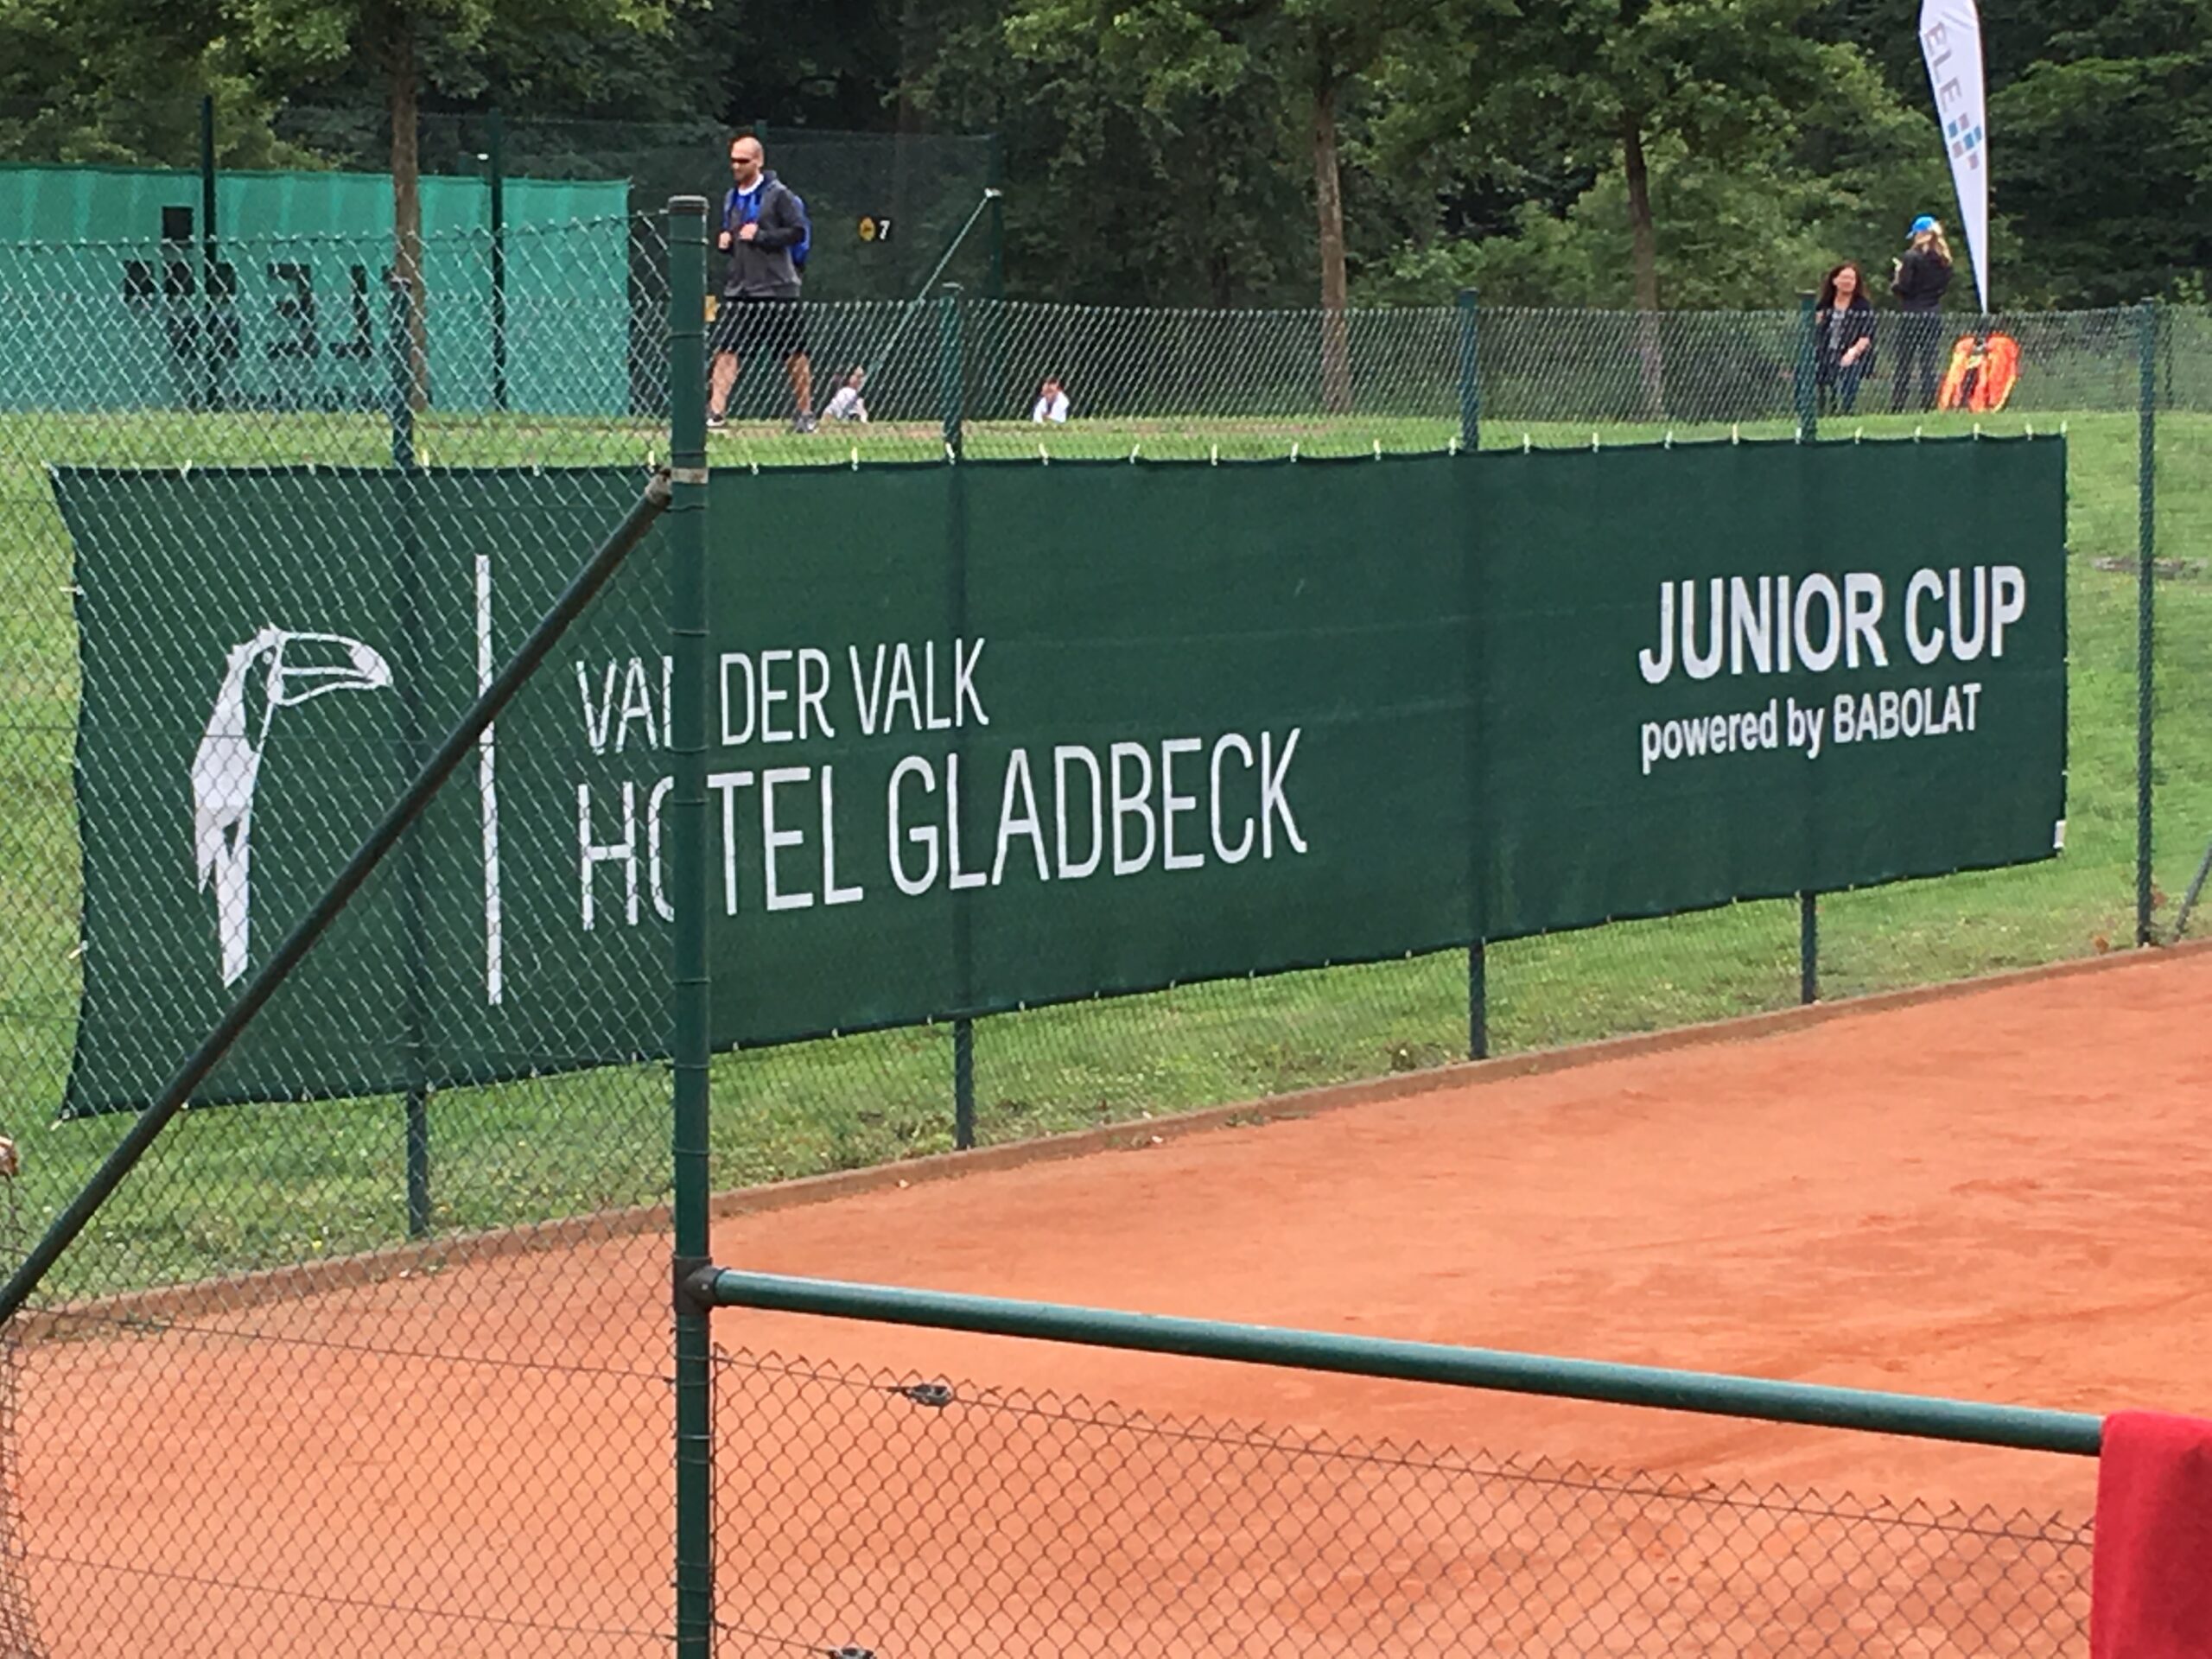 Van der Valk ITF Juniors Cup 2018